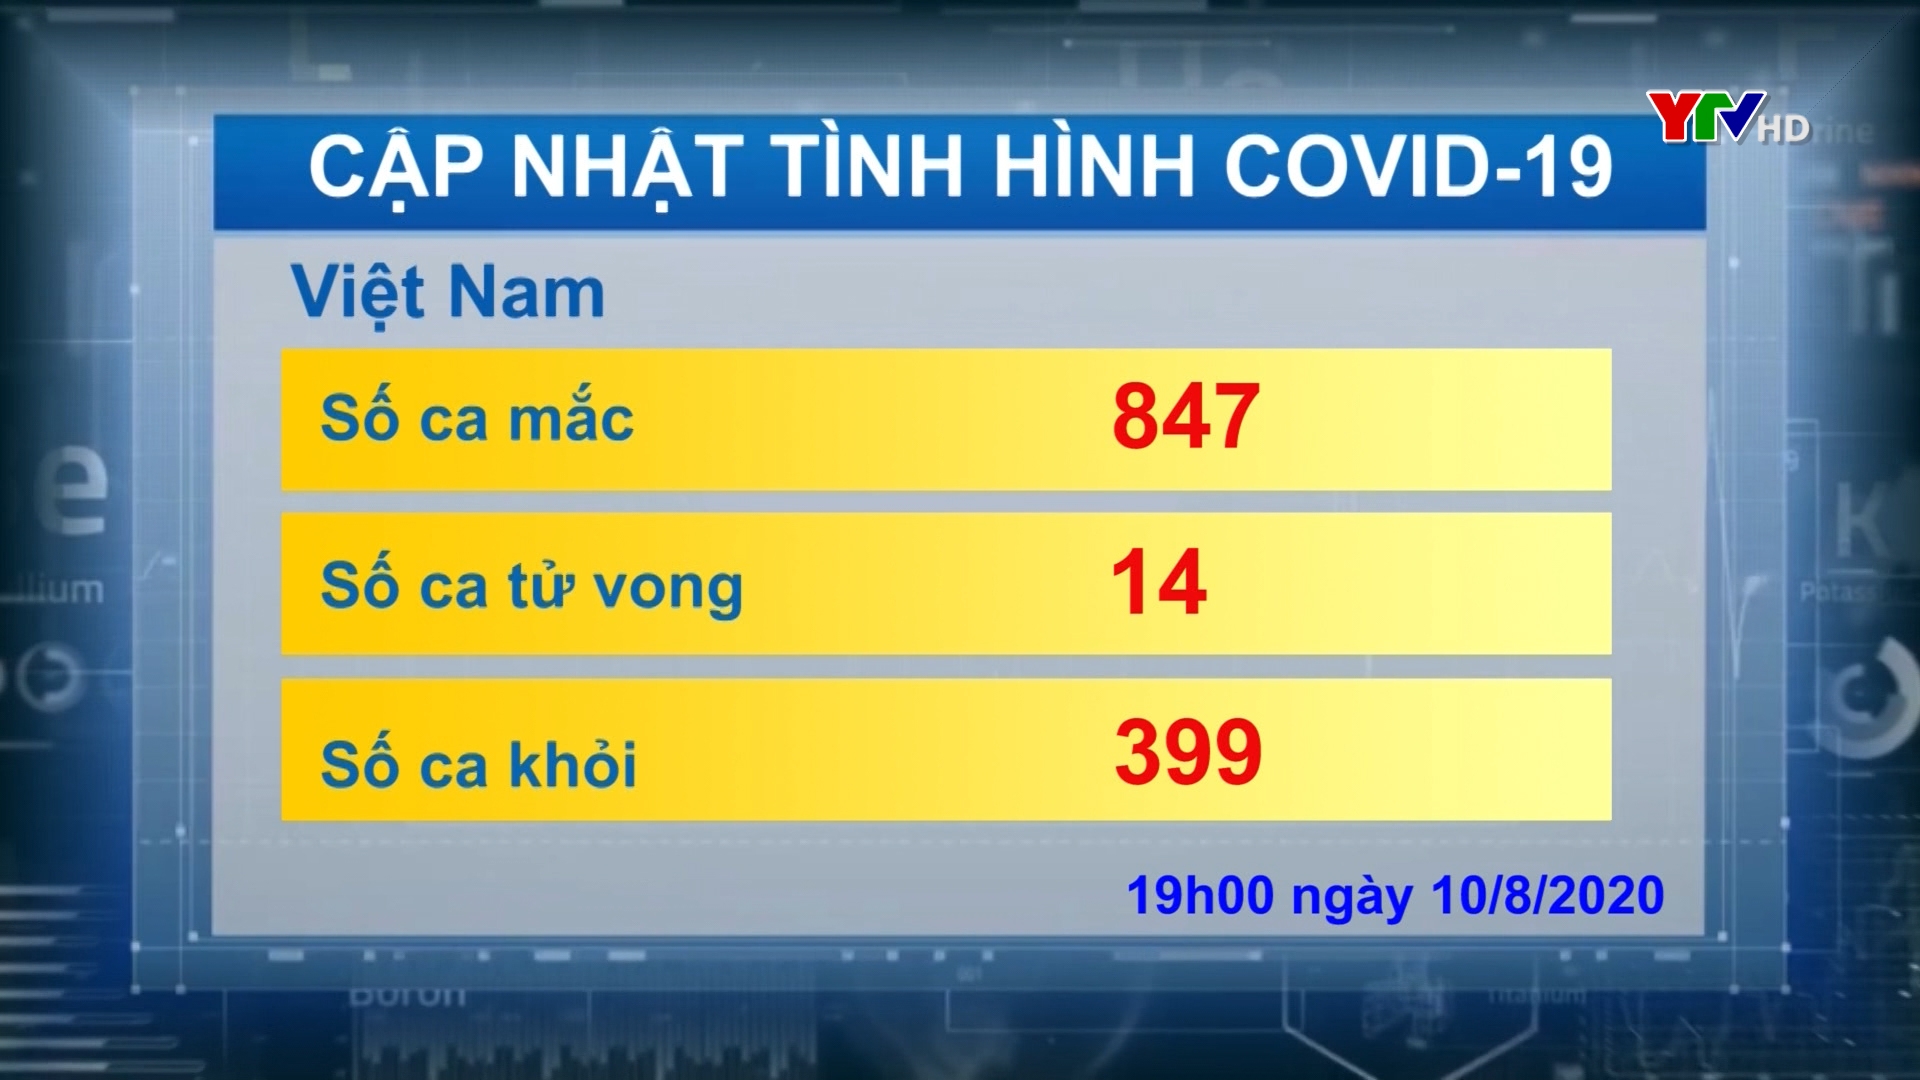 Hôm nay Việt Nam ghi nhận thêm 6 ca mắc mới và 3 ca tử vong do COVID - 19